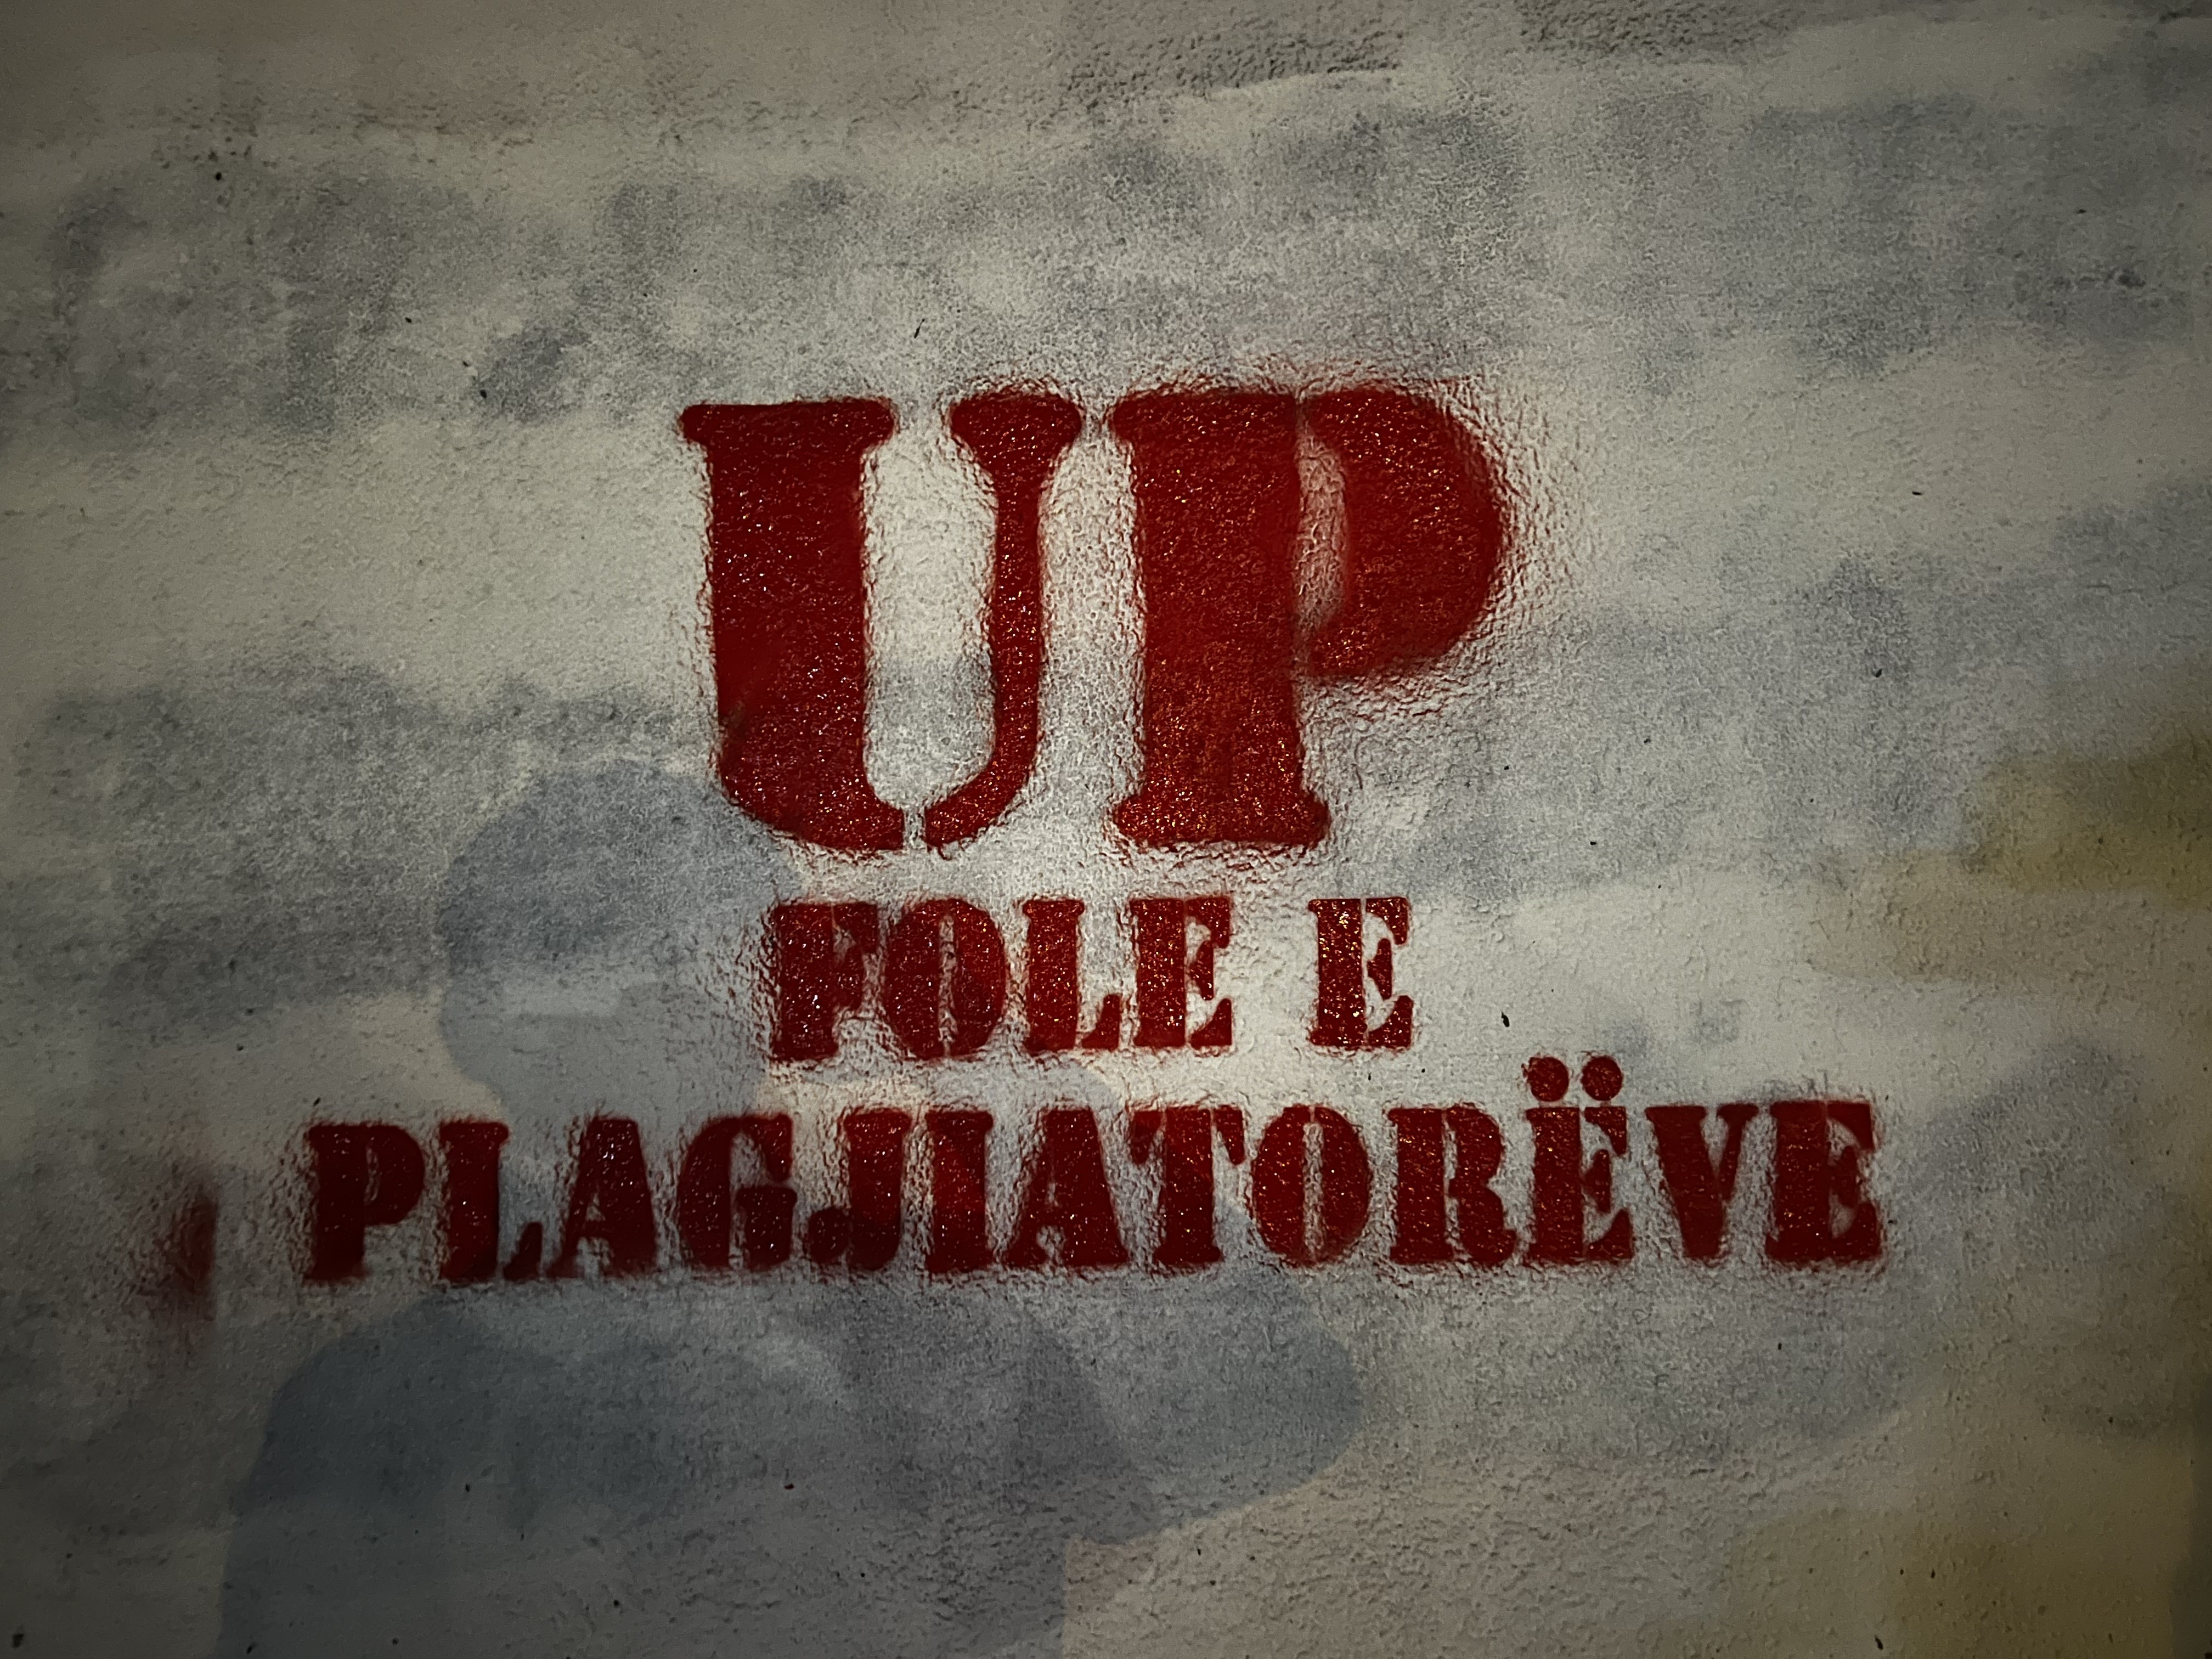 Universiteti i Prishtinës "Fole e plagjiatorëve"